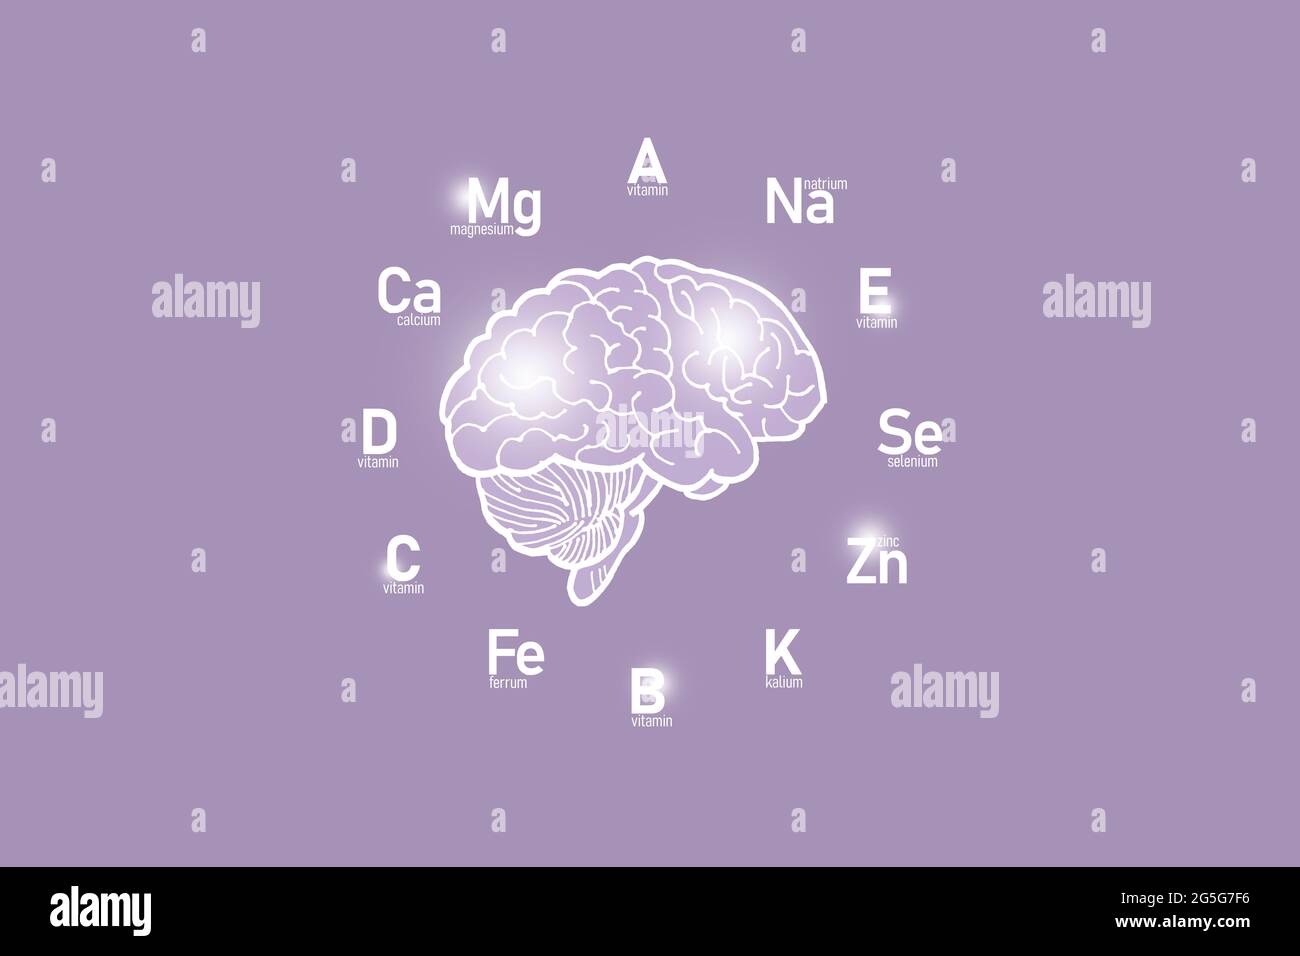 Stilisiertes Ziffernblatt mit lebenswichtigen Vitaminen und Mikroelementen für die menschliche Gesundheit, handgezeichnetes Gehirn, lilafarbiger Hintergrund. Design-Modell für Gesundheitskonzepte. Stockfoto